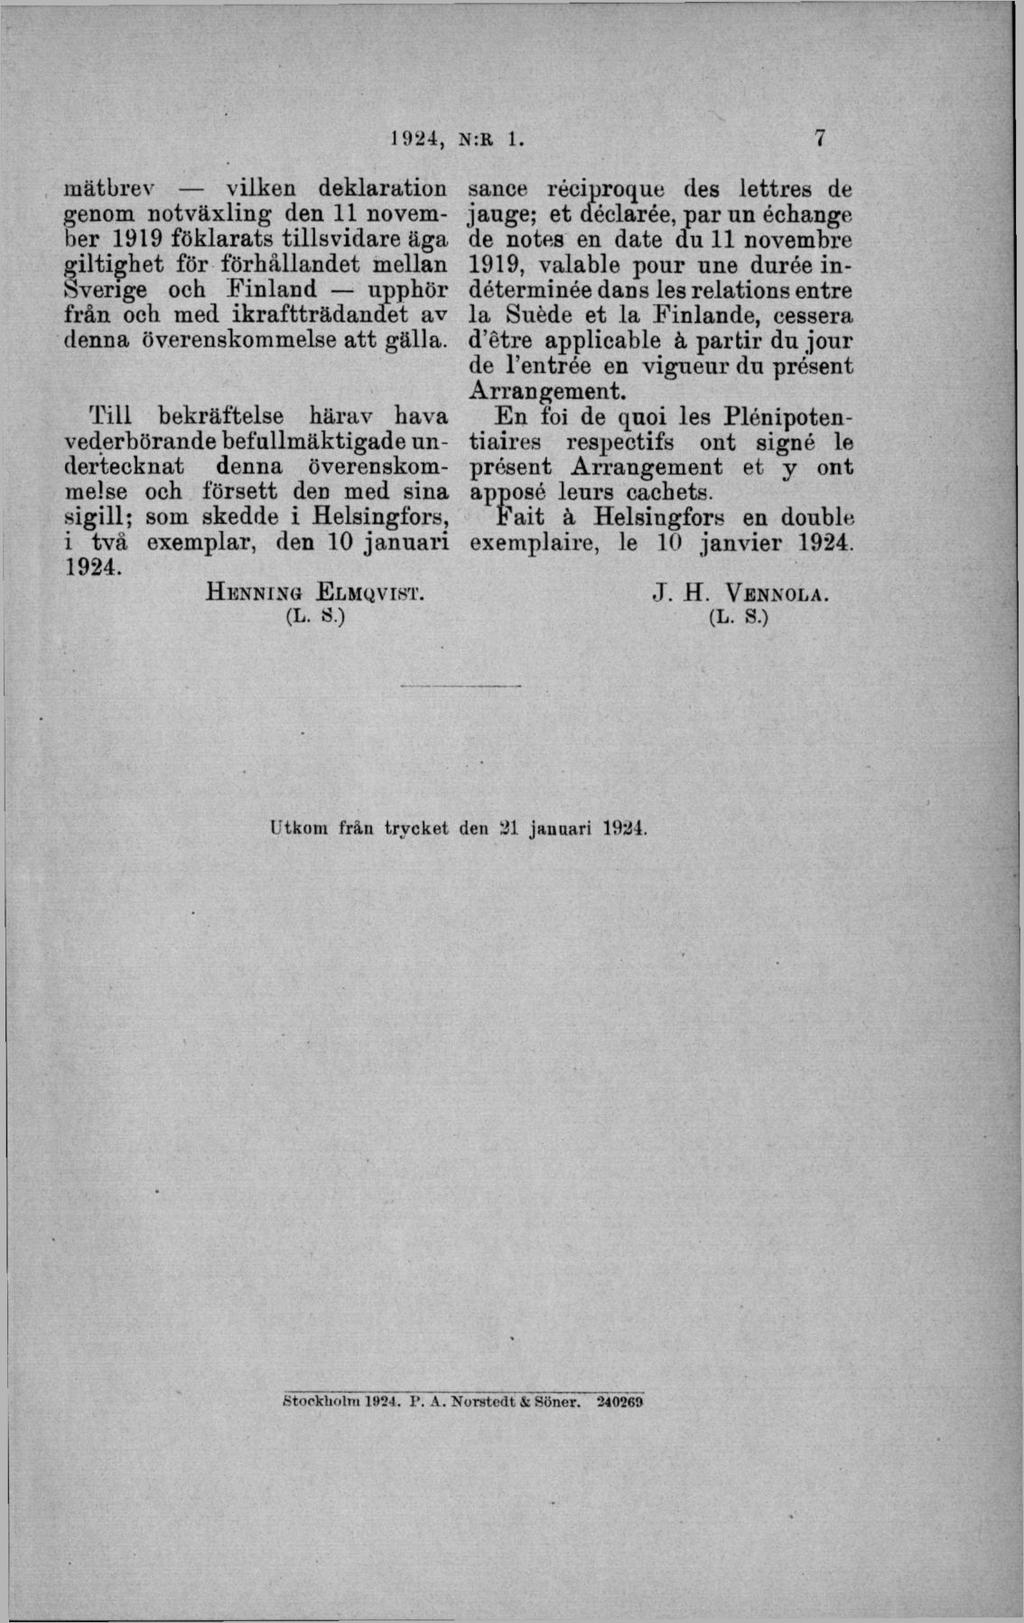 mätbrev vilken deklaration genom notväxling den 11 november 1919 föklarats tillsvidare äga giltighet för förhållandet mellan Sverige och Finland upphör från och med ikraftträdandet av denna